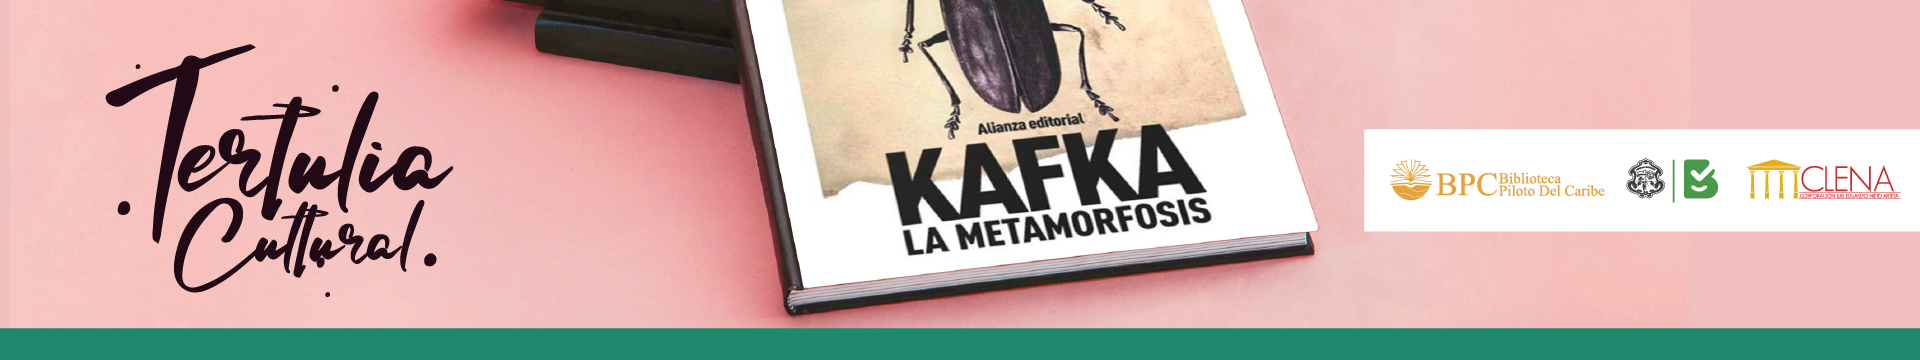 Tertulia Cultural: "La Metamorfosis" de Frank Kafka